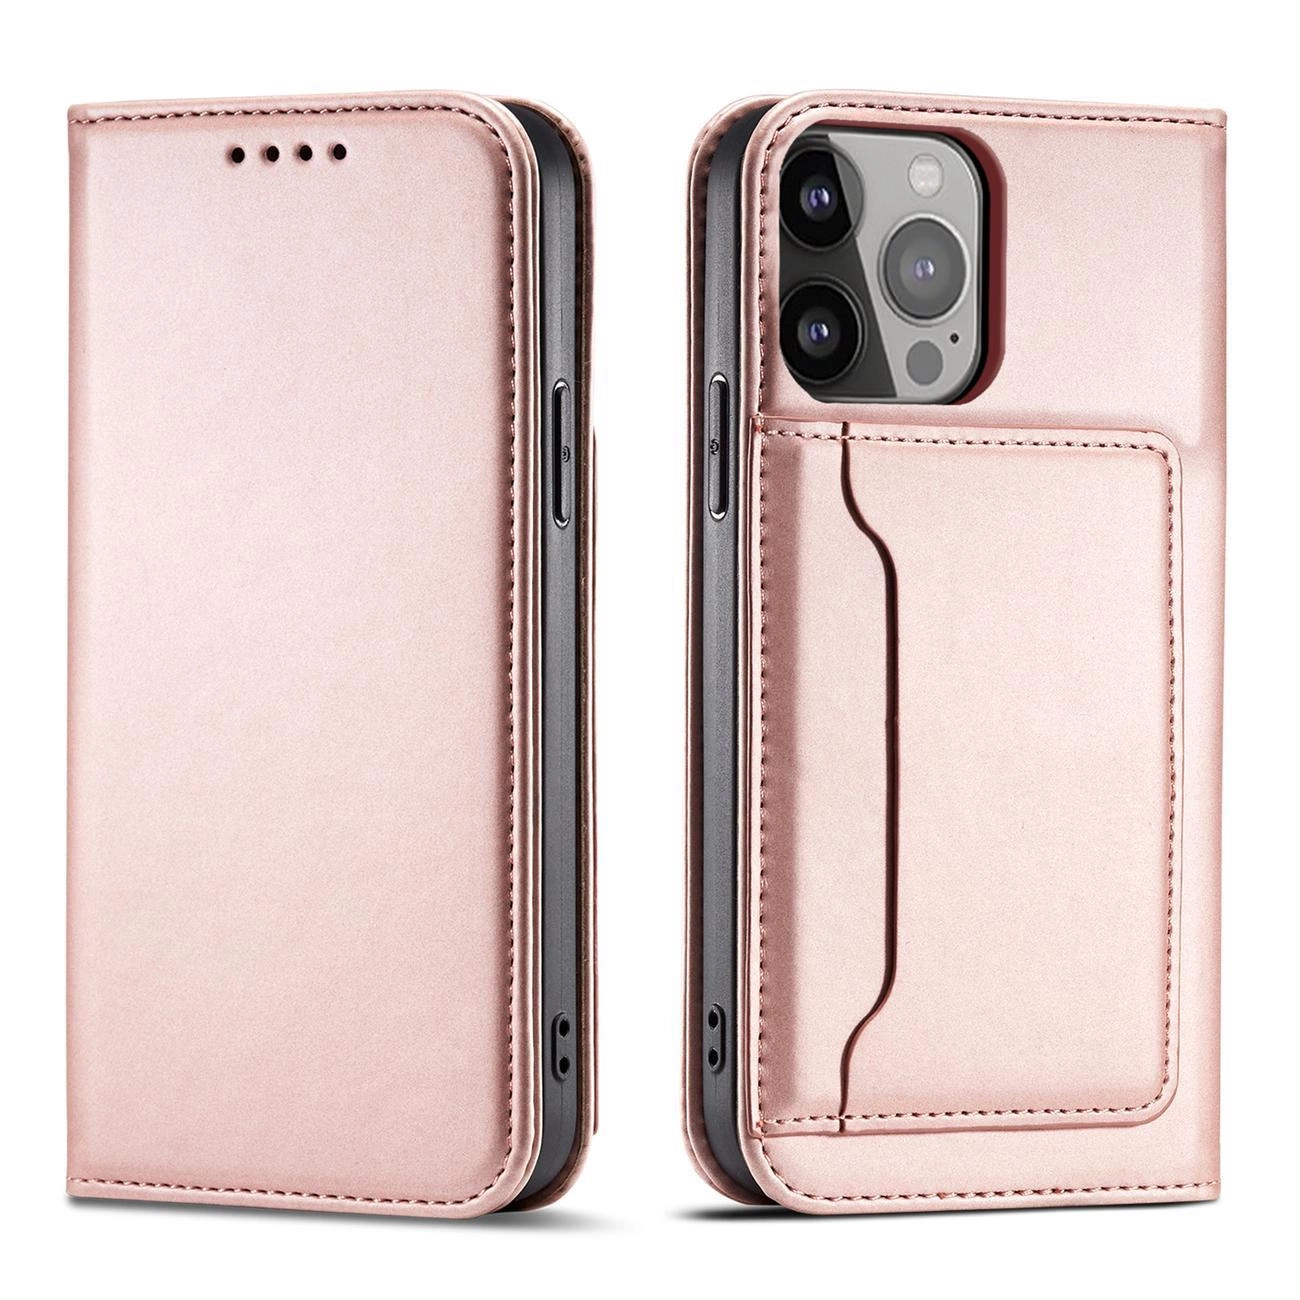 Hurtel Magnet Card Case pro iPhone 13 card wallet cover card holder pink